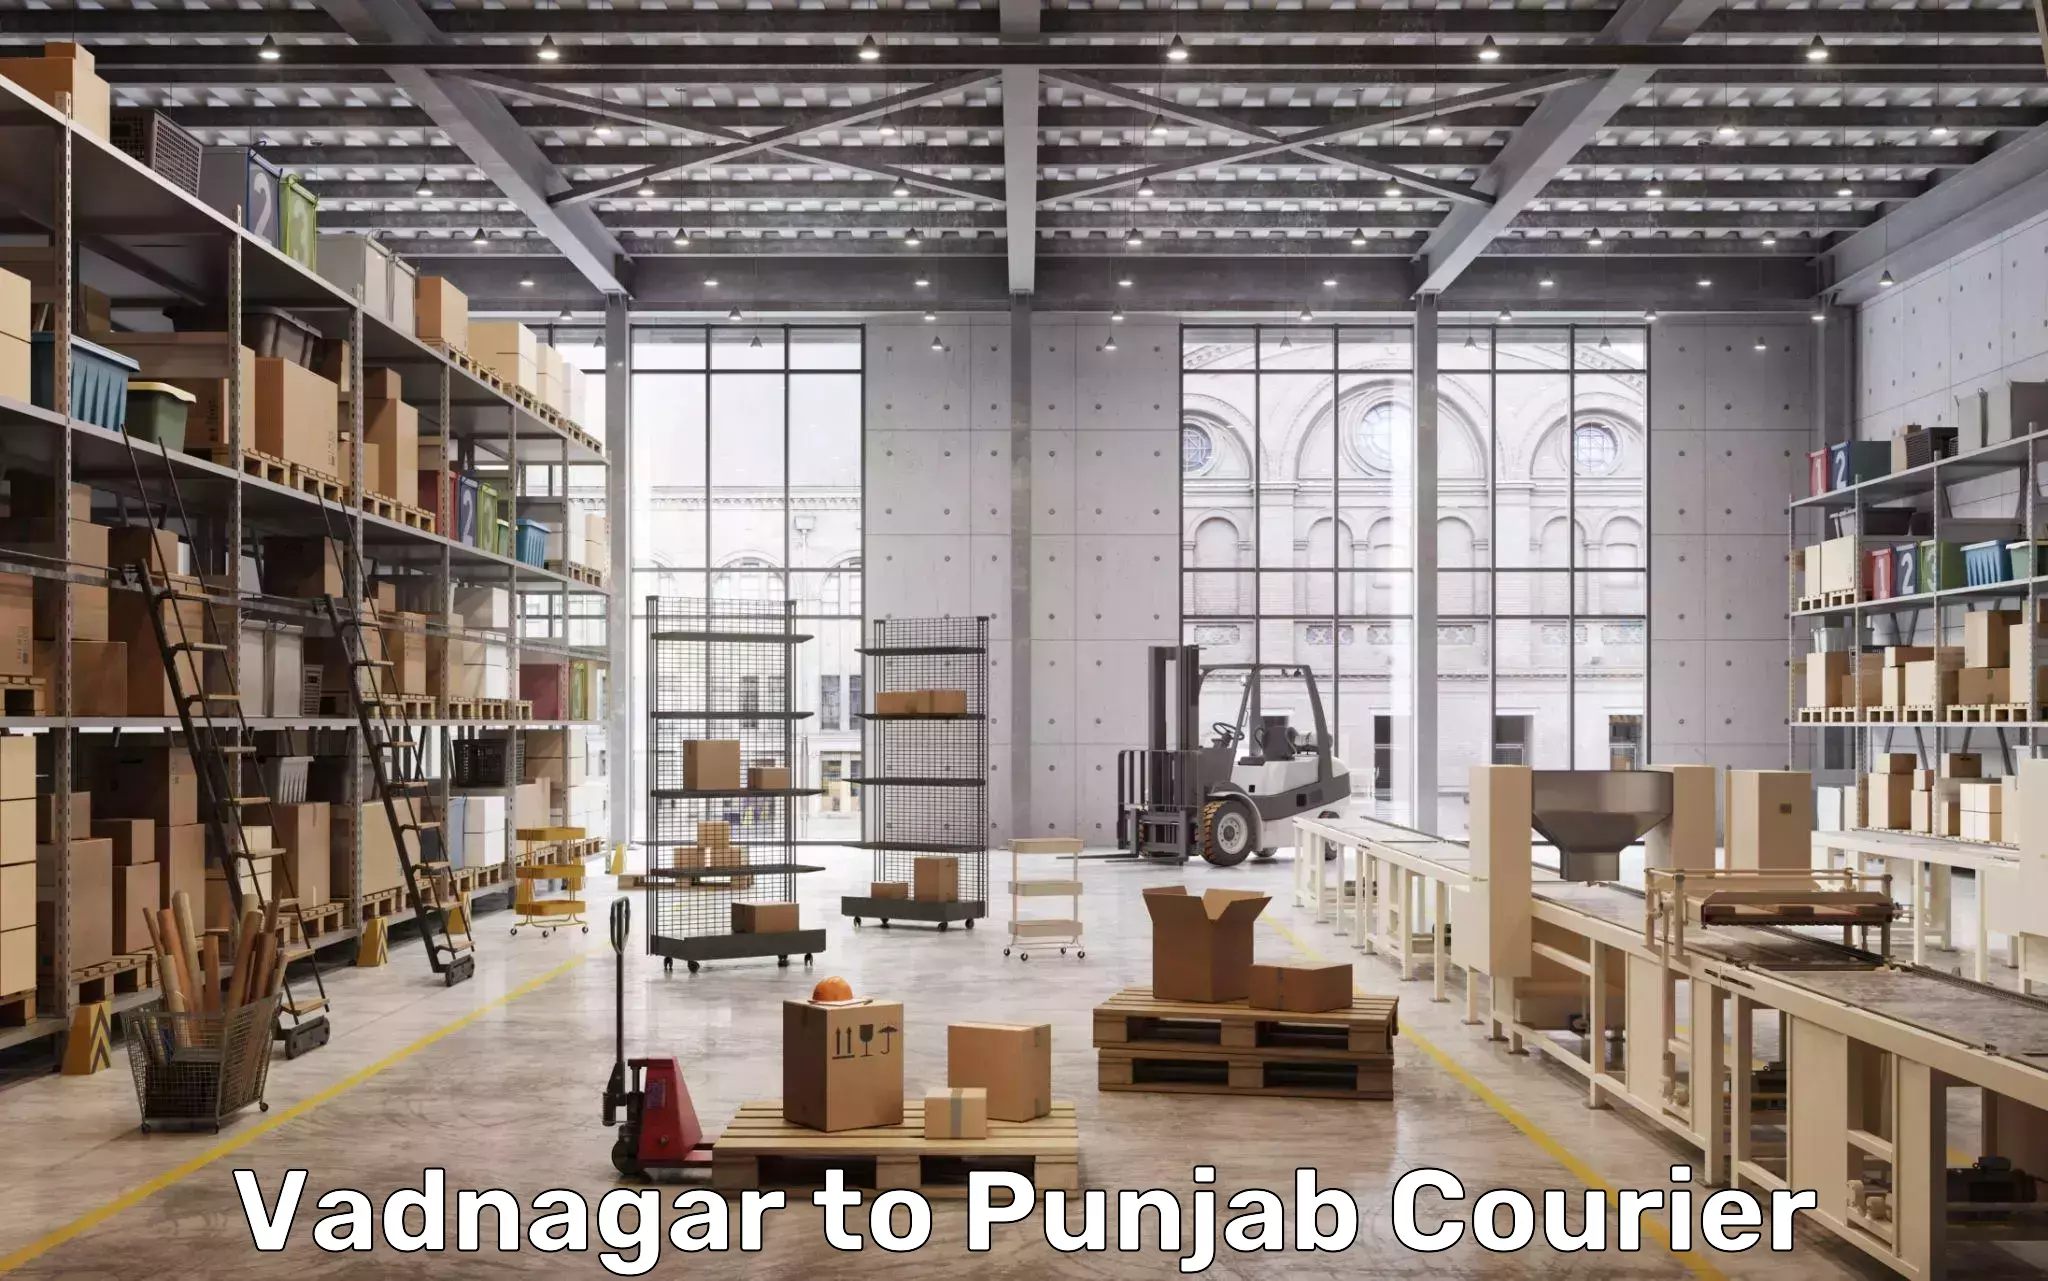 Baggage transport management Vadnagar to Punjab